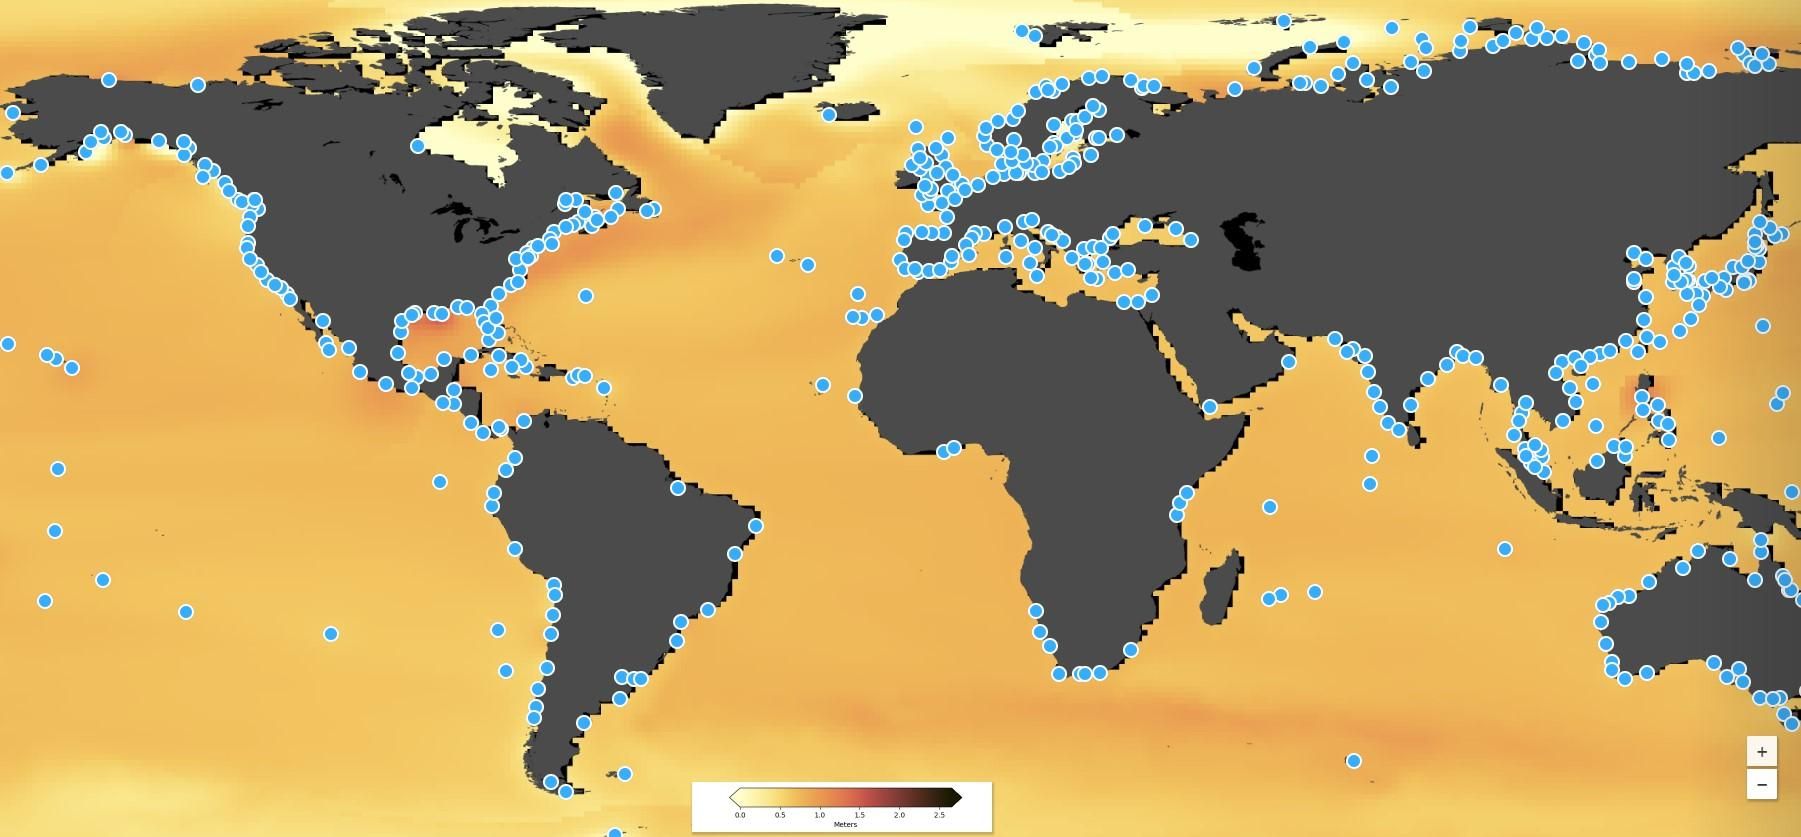 Рівень моря: сайт прогнозує підняття рівня моря